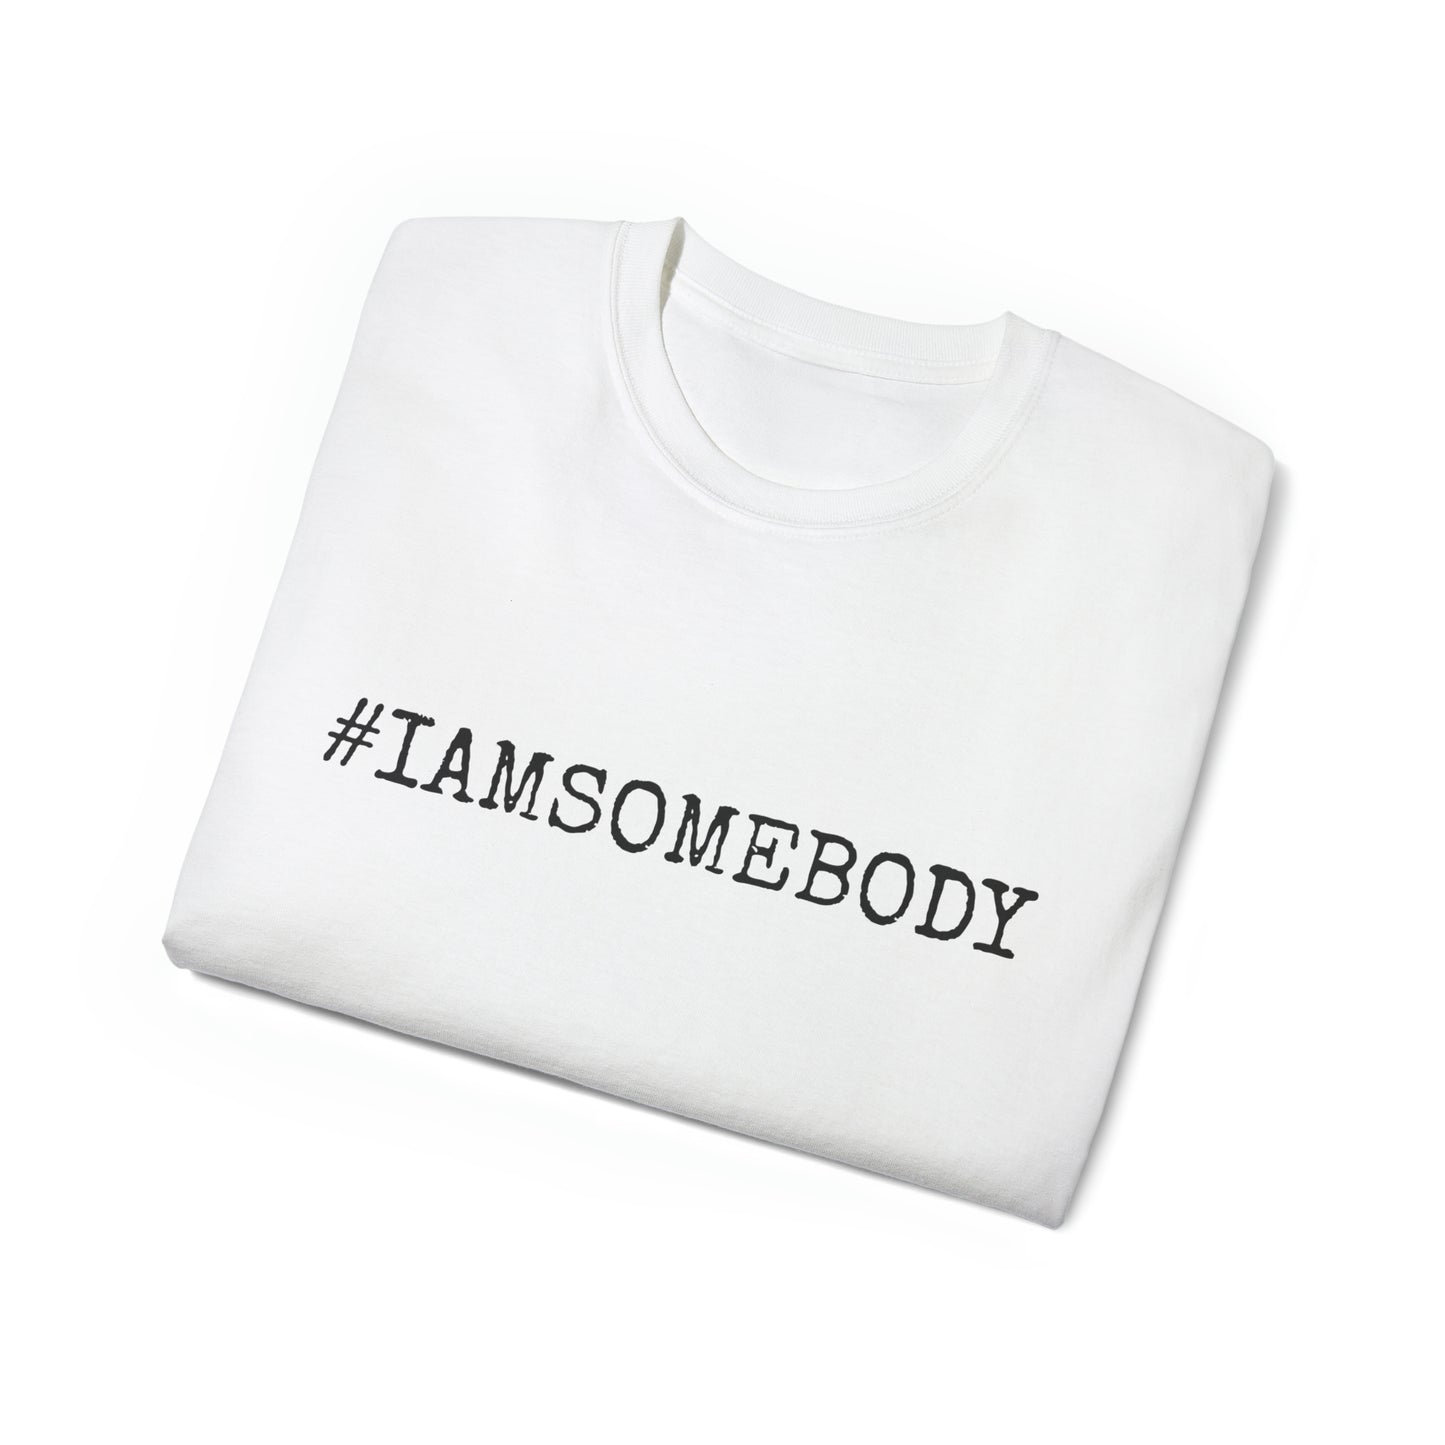 I AM SOMEBODY